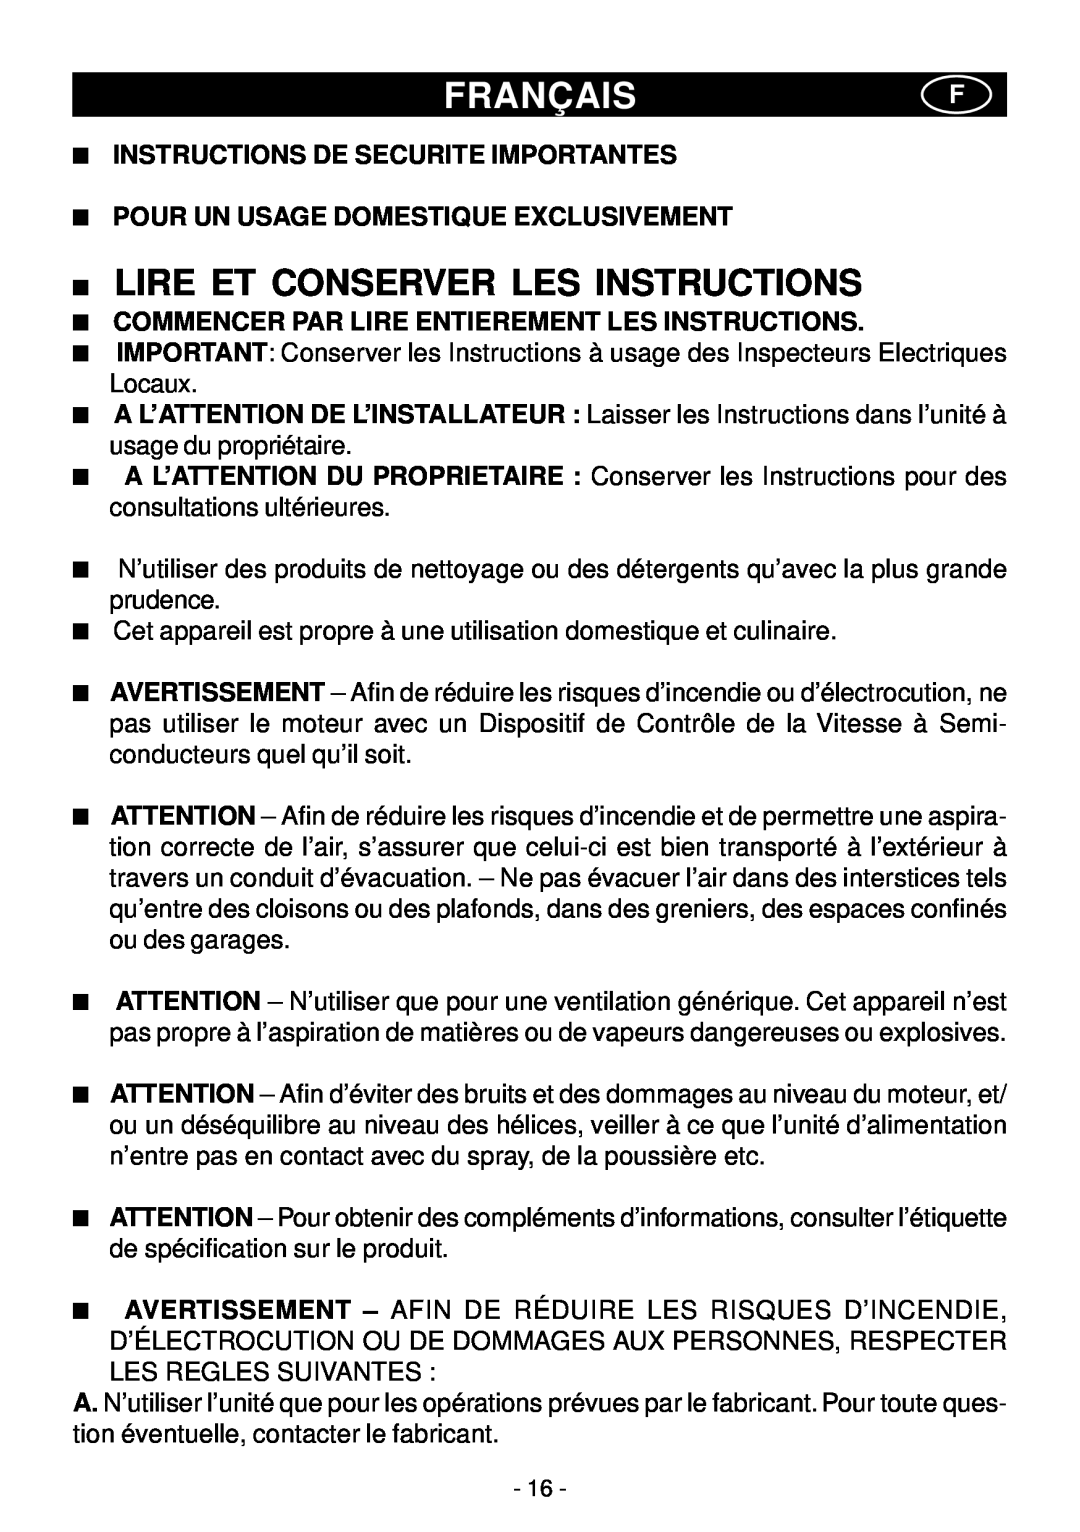 Elitair PN-I manual Françaisf, Lire Et Conserver Les Instructions, Instructions De Securite Importantes 